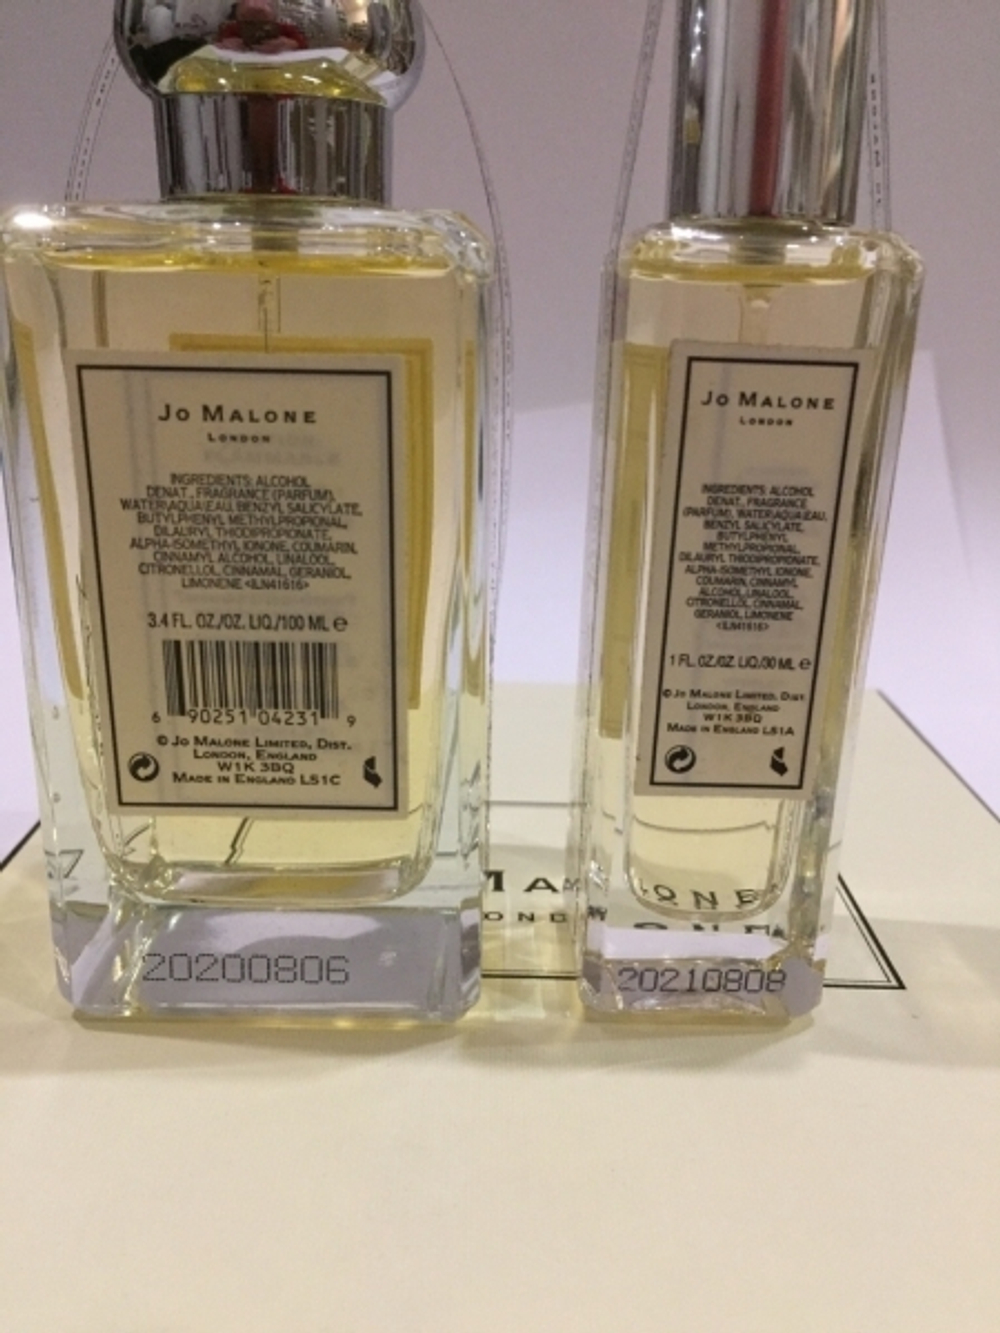 Набор парфюмерии Jo Malone Mimosa & Cardamom набор 100ml + 30ml (duty free парфюмерия)